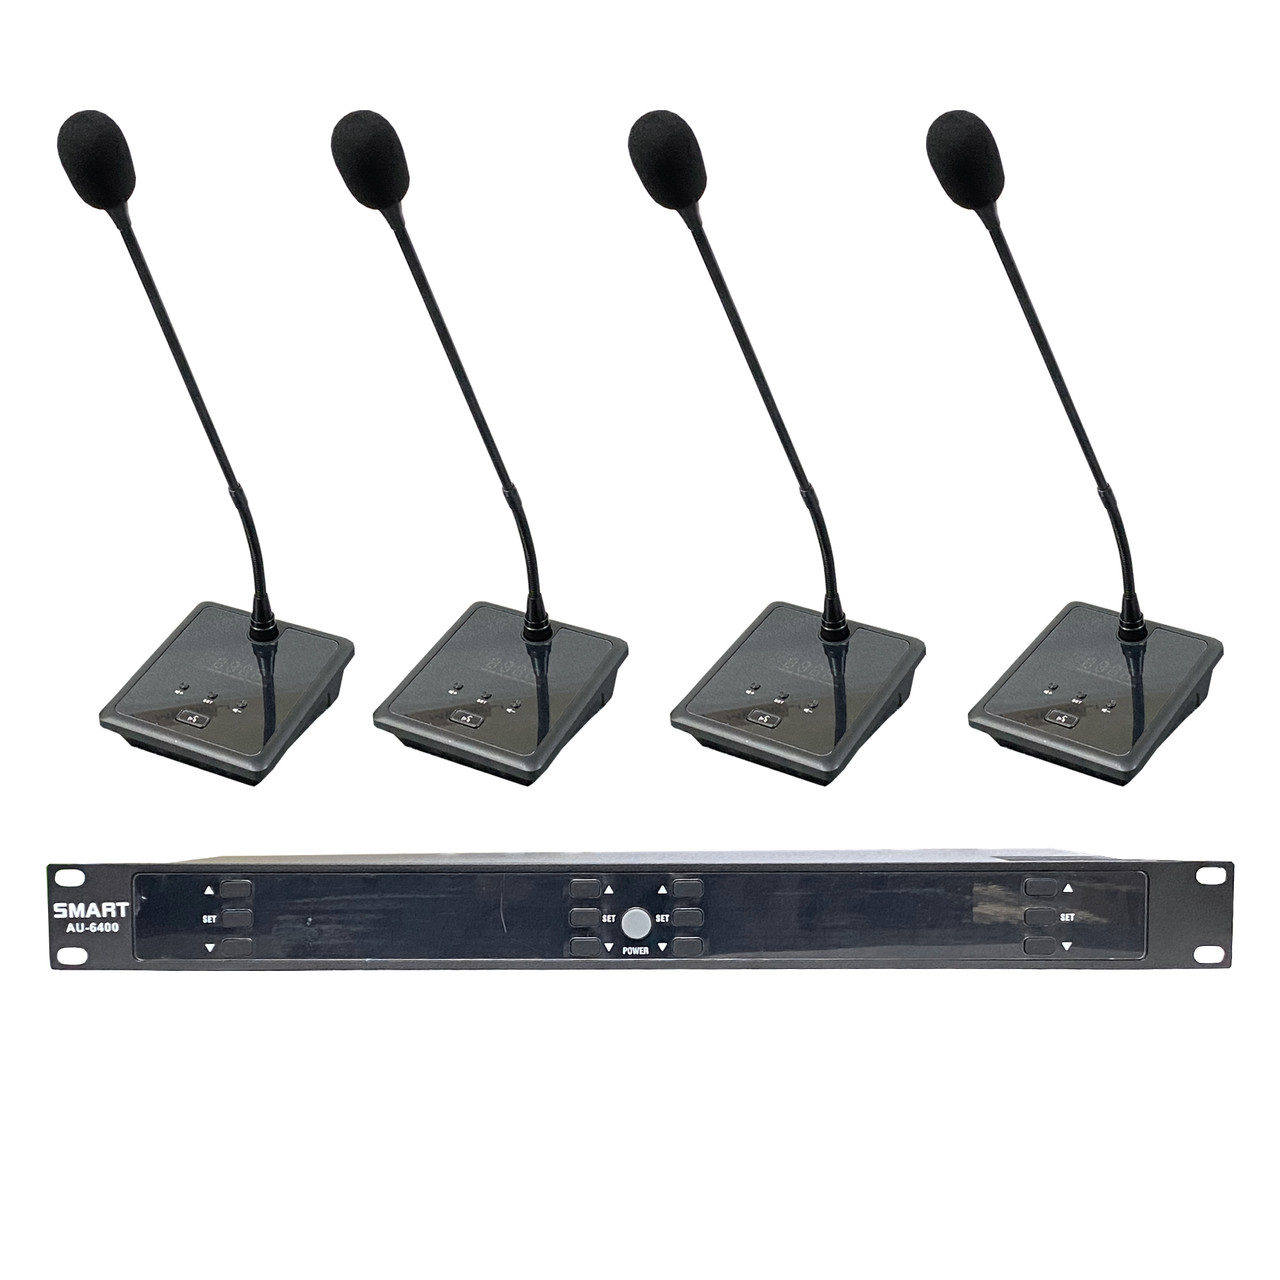 Комплект из 4 штук беспроводных микрофонов для конференций, Smart AU-6400